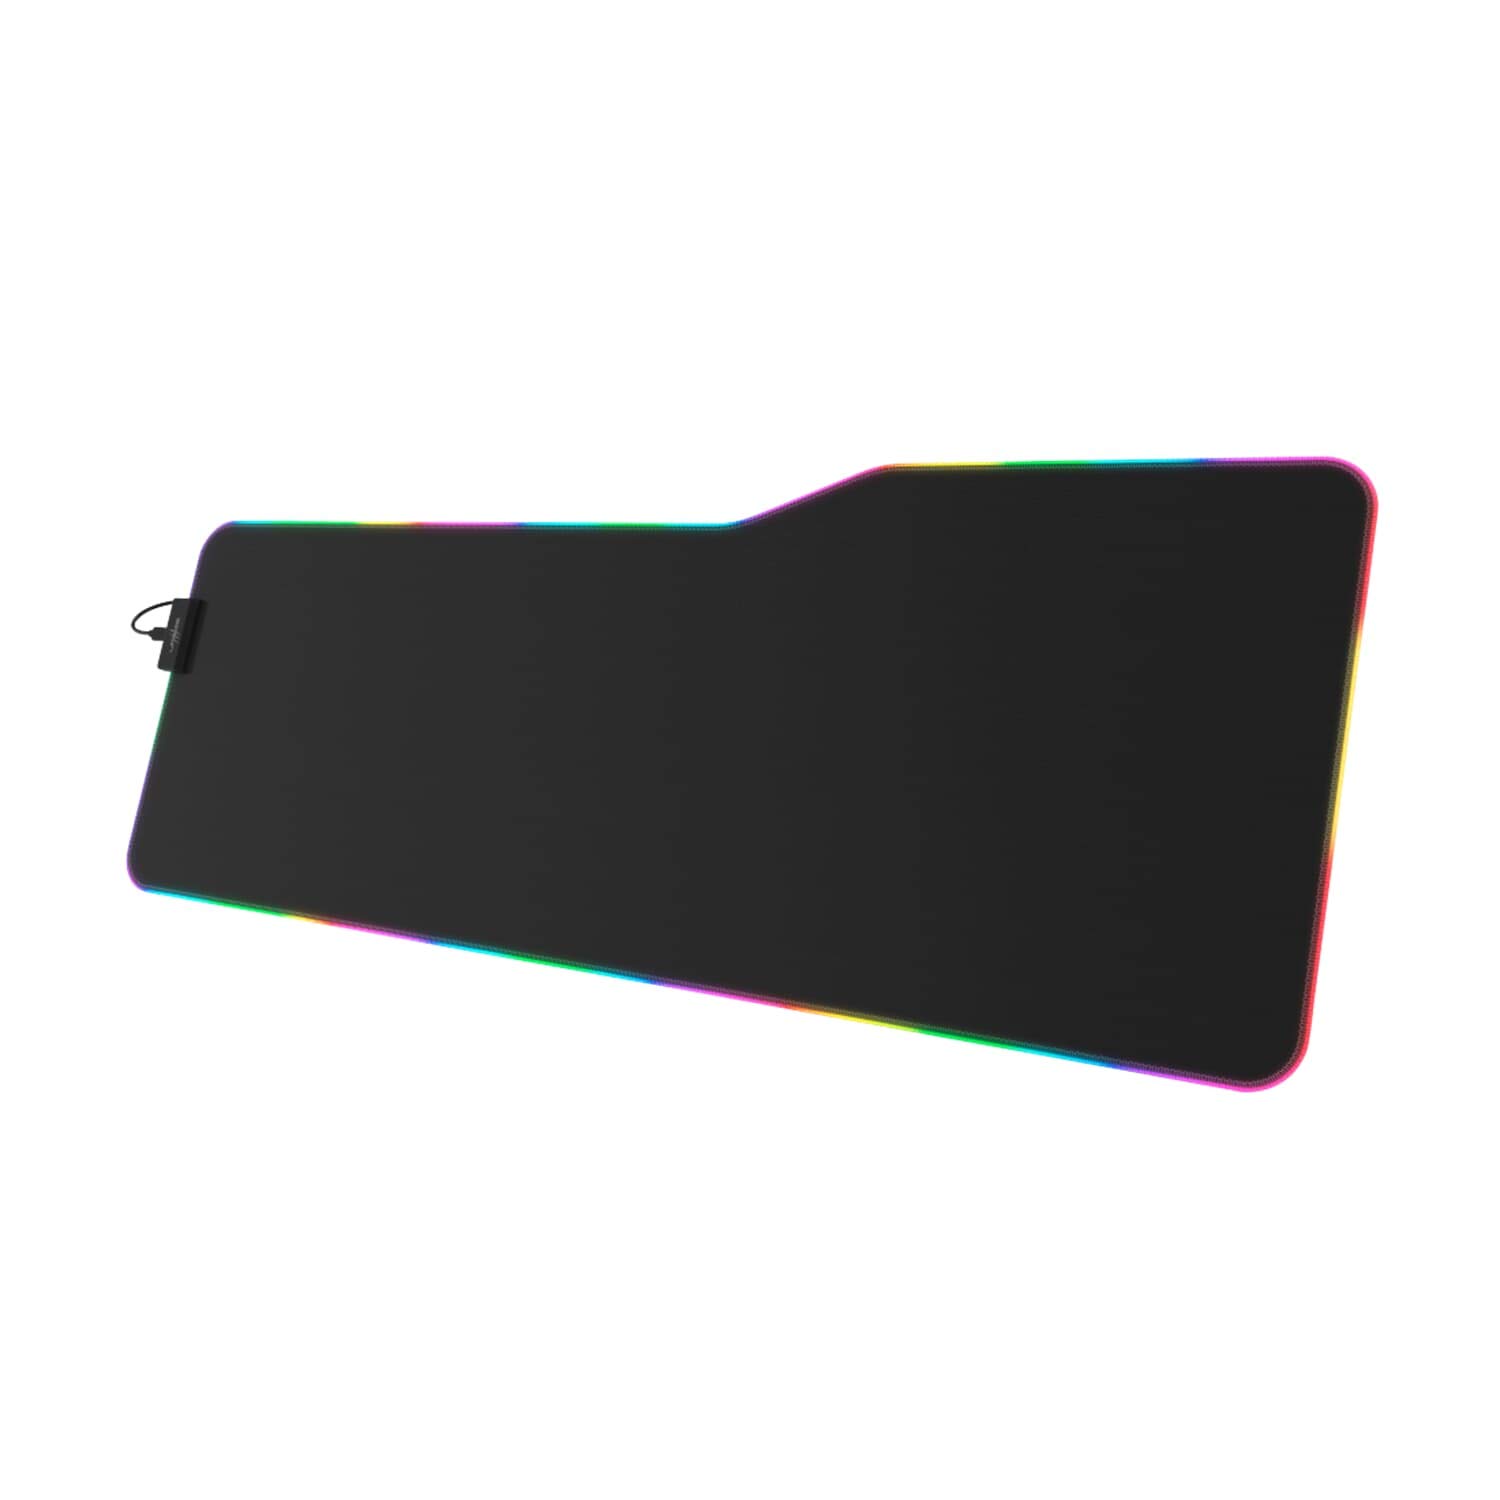 uRage Gaming-Mauspad “Rag Illuminated XXL”, schwarz, Anti-Rutsch-Beschichtung, Naturgummi, für Tastatur und Maus, inkl. LED-Beleuchtung, kabelgebunden, extra groß, 90 x 0,3 x 34 cm